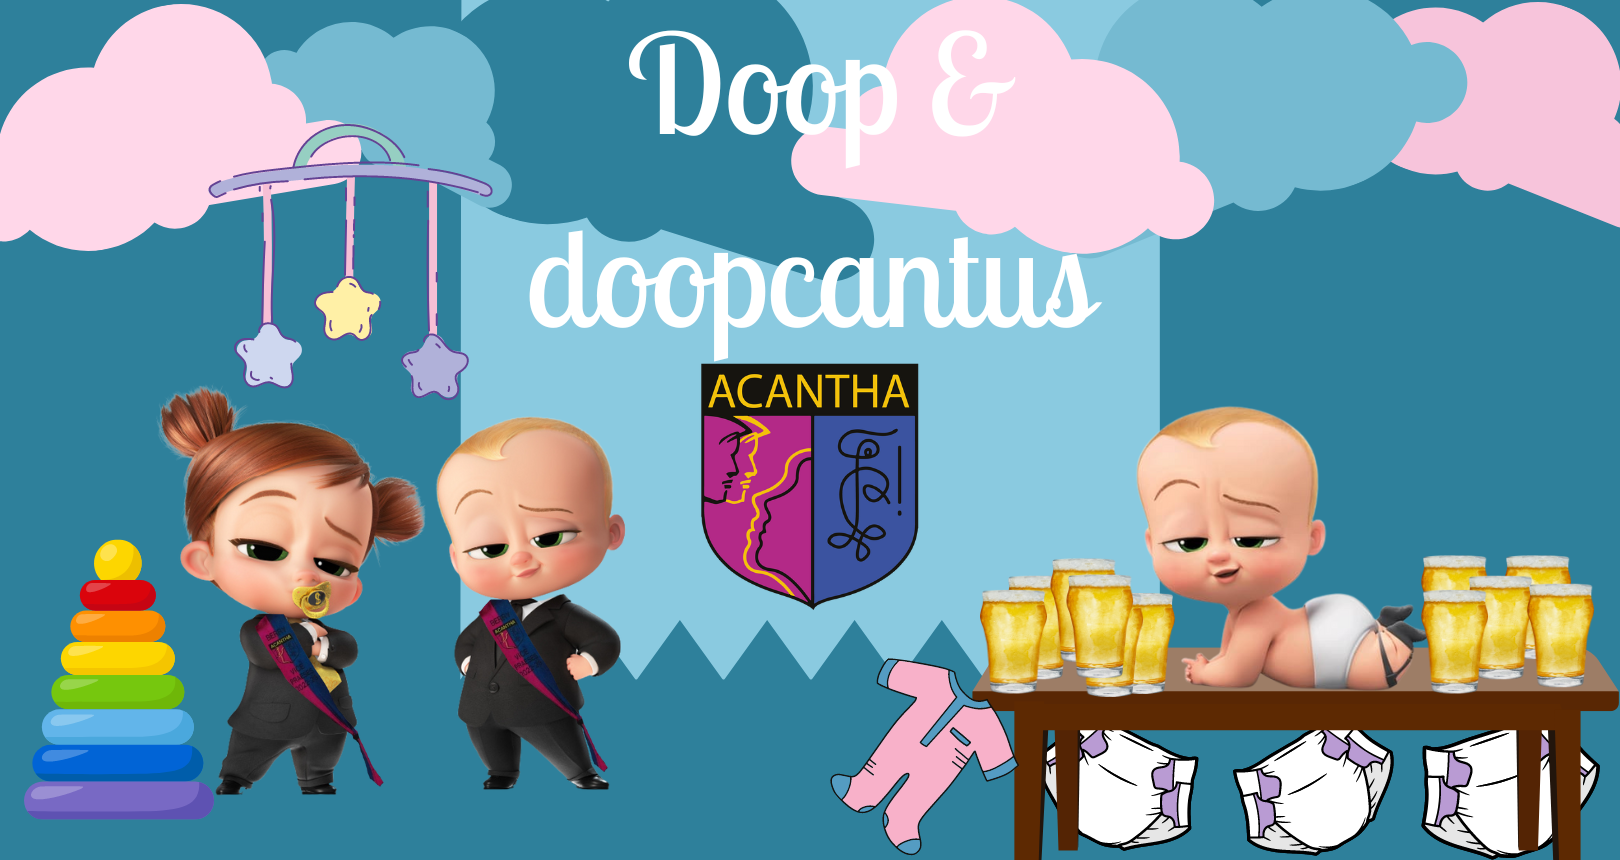 Acantha's Doop